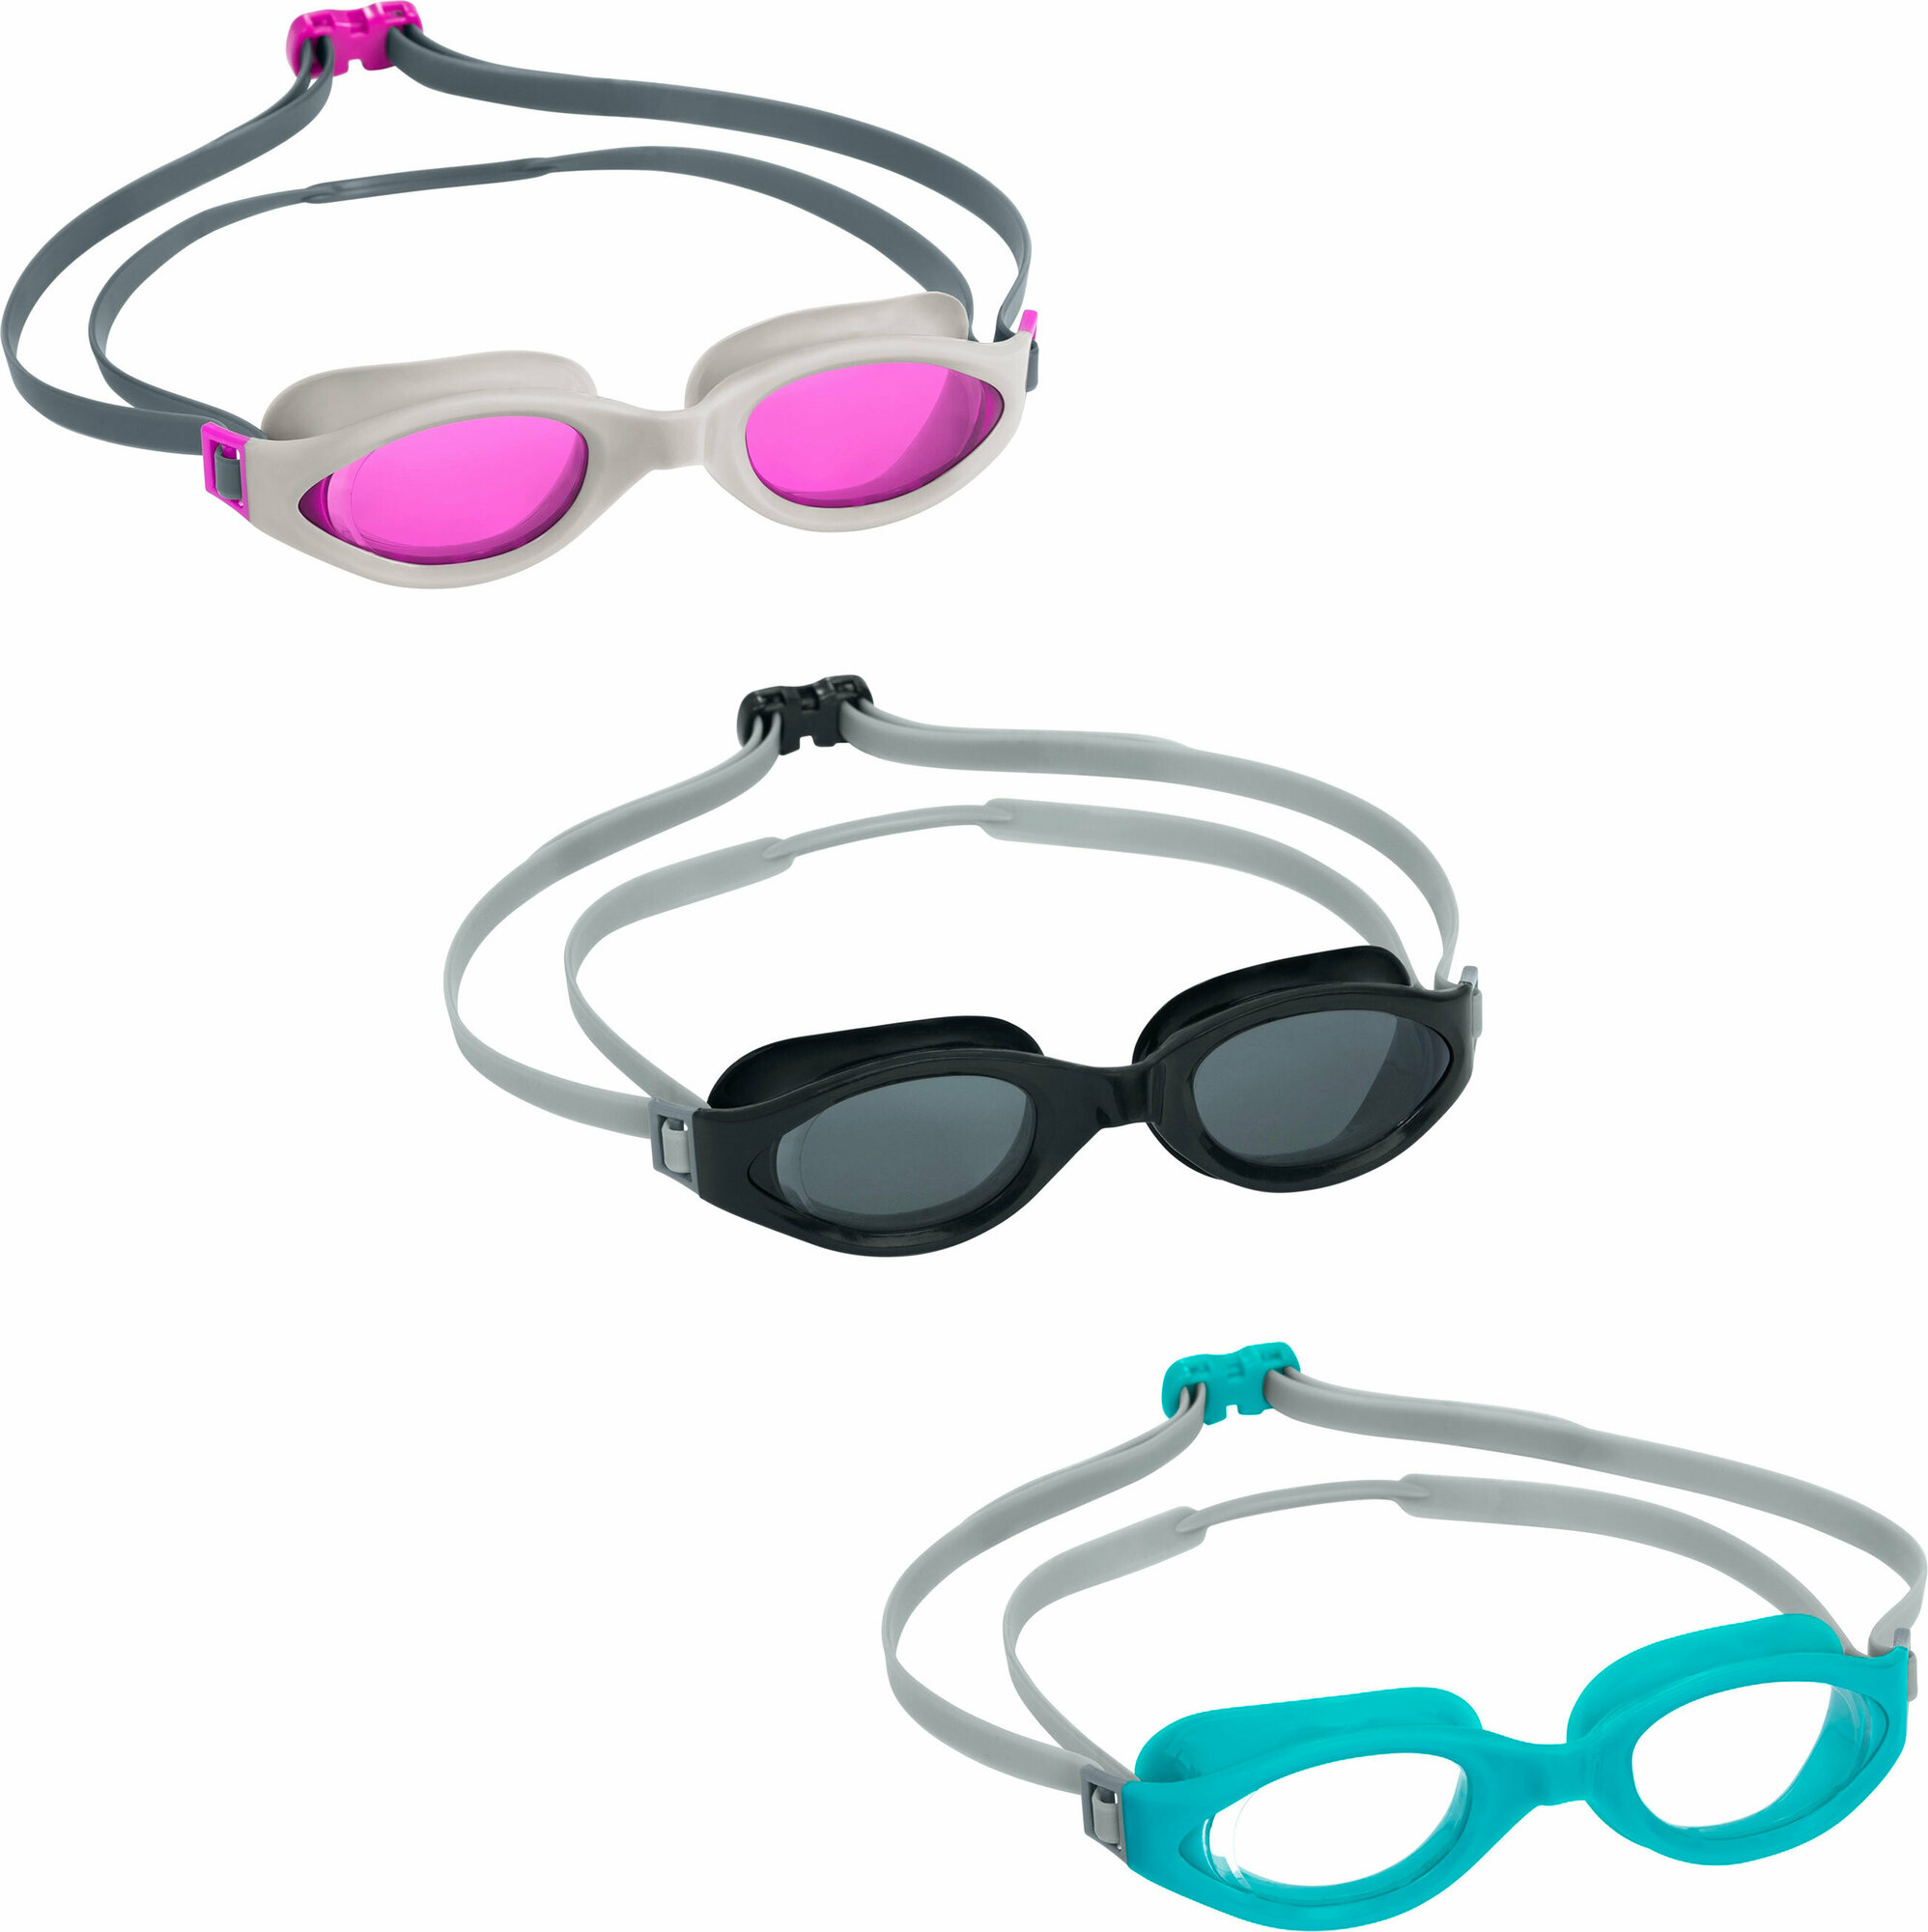 Очки для плавания от 14 лет IX-1400 Goggles Bestway (21077)